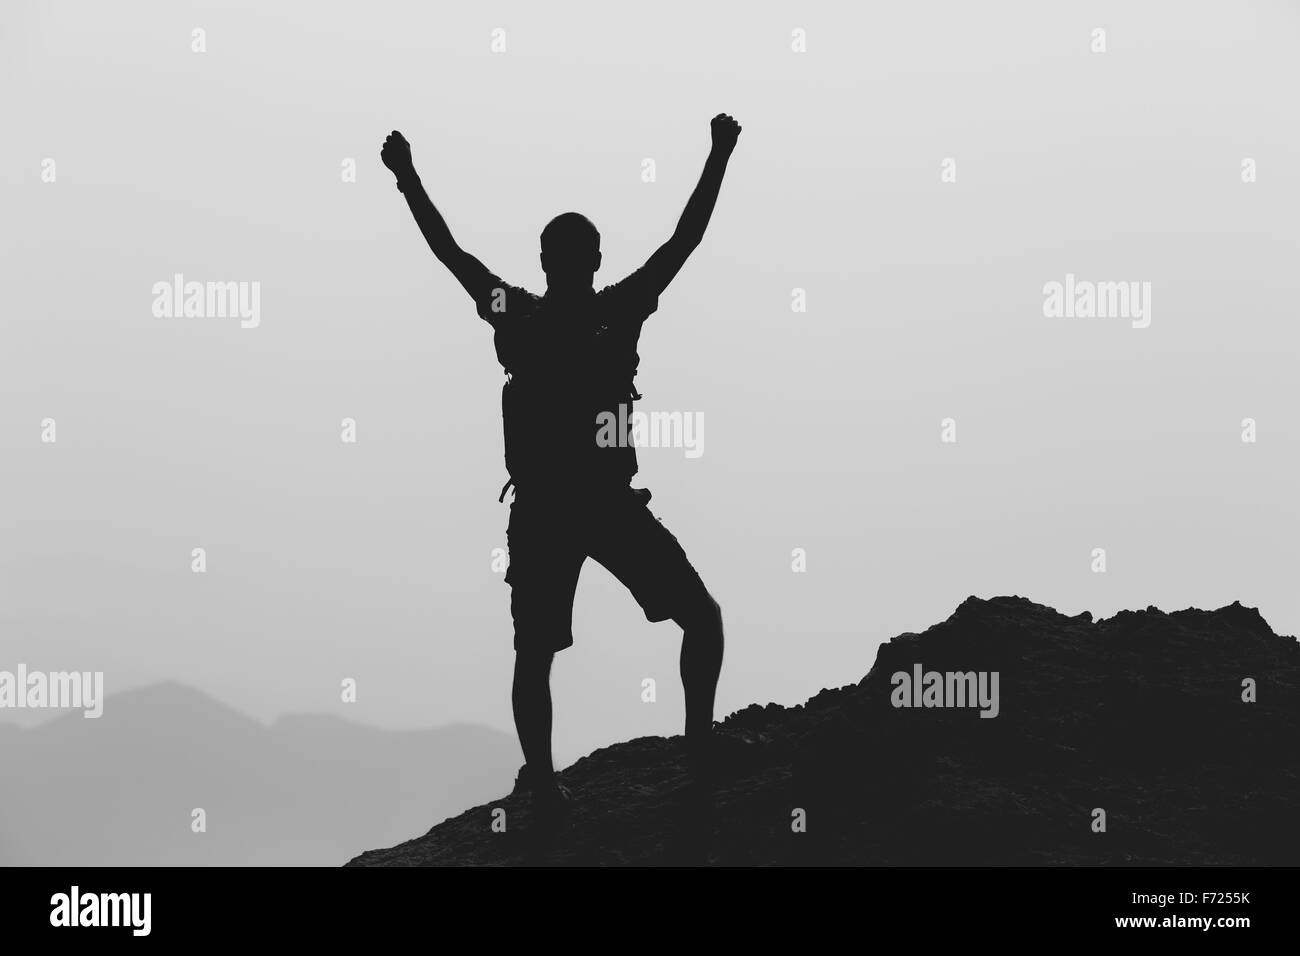 Erfolg erreichen, Klettern oder Wandern Leistung Geschäftskonzept mit Mann feiert mit Arme nach oben, hob ausgestreckt. Stockfoto